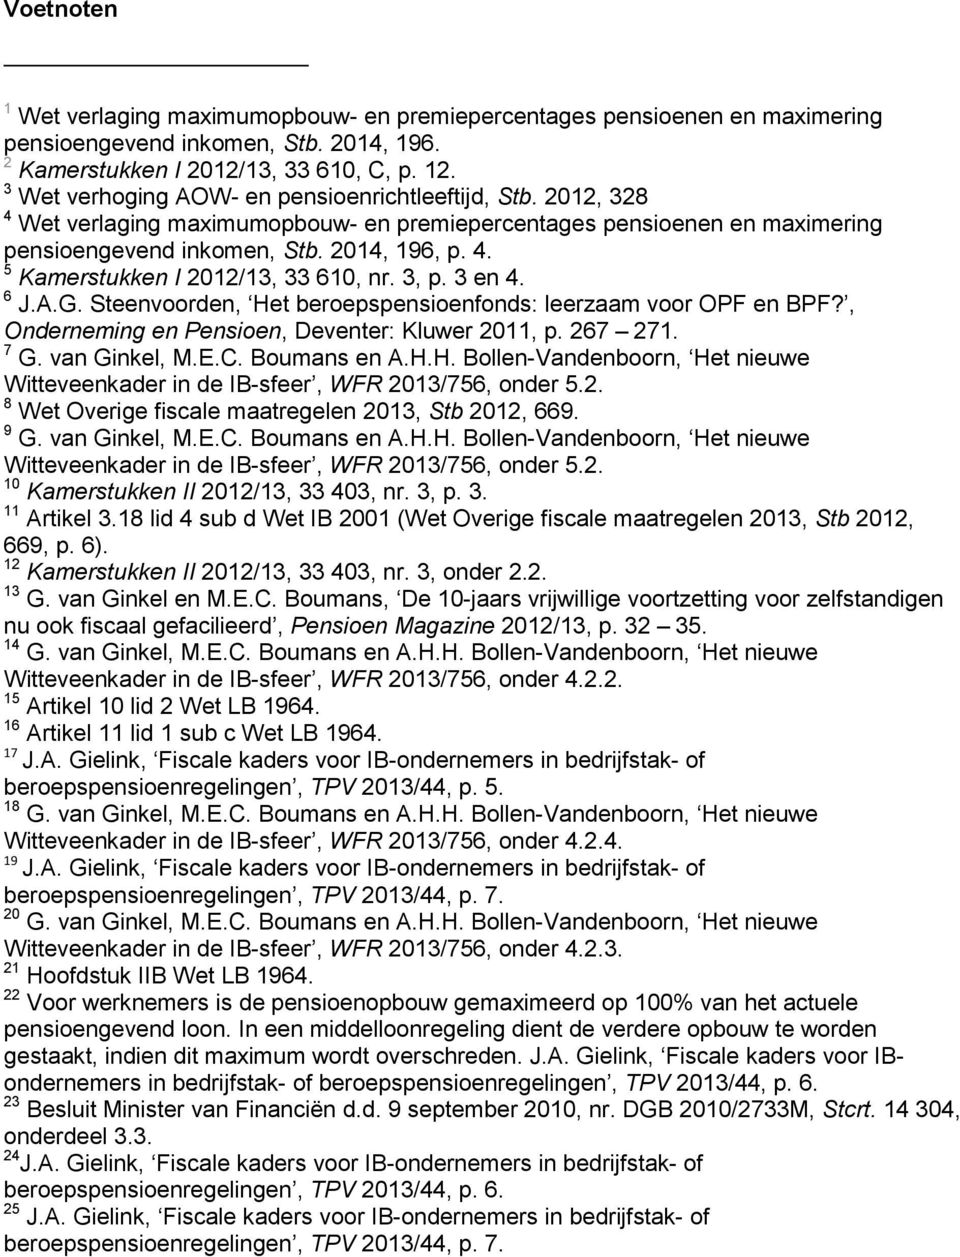 3, p. 3 en 4. 6 J.A.G. Steenvoorden, Het beroepspensioenfonds: leerzaam voor OPF en BPF?, Onderneming en Pensioen, Deventer: Kluwer 2011, p. 267 271. 7 G. van Ginkel, M.E.C. Boumans en A.H.H. Bollen-Vandenboorn, Het nieuwe Witteveenkader in de IB-sfeer, WFR 2013/756, onder 5.